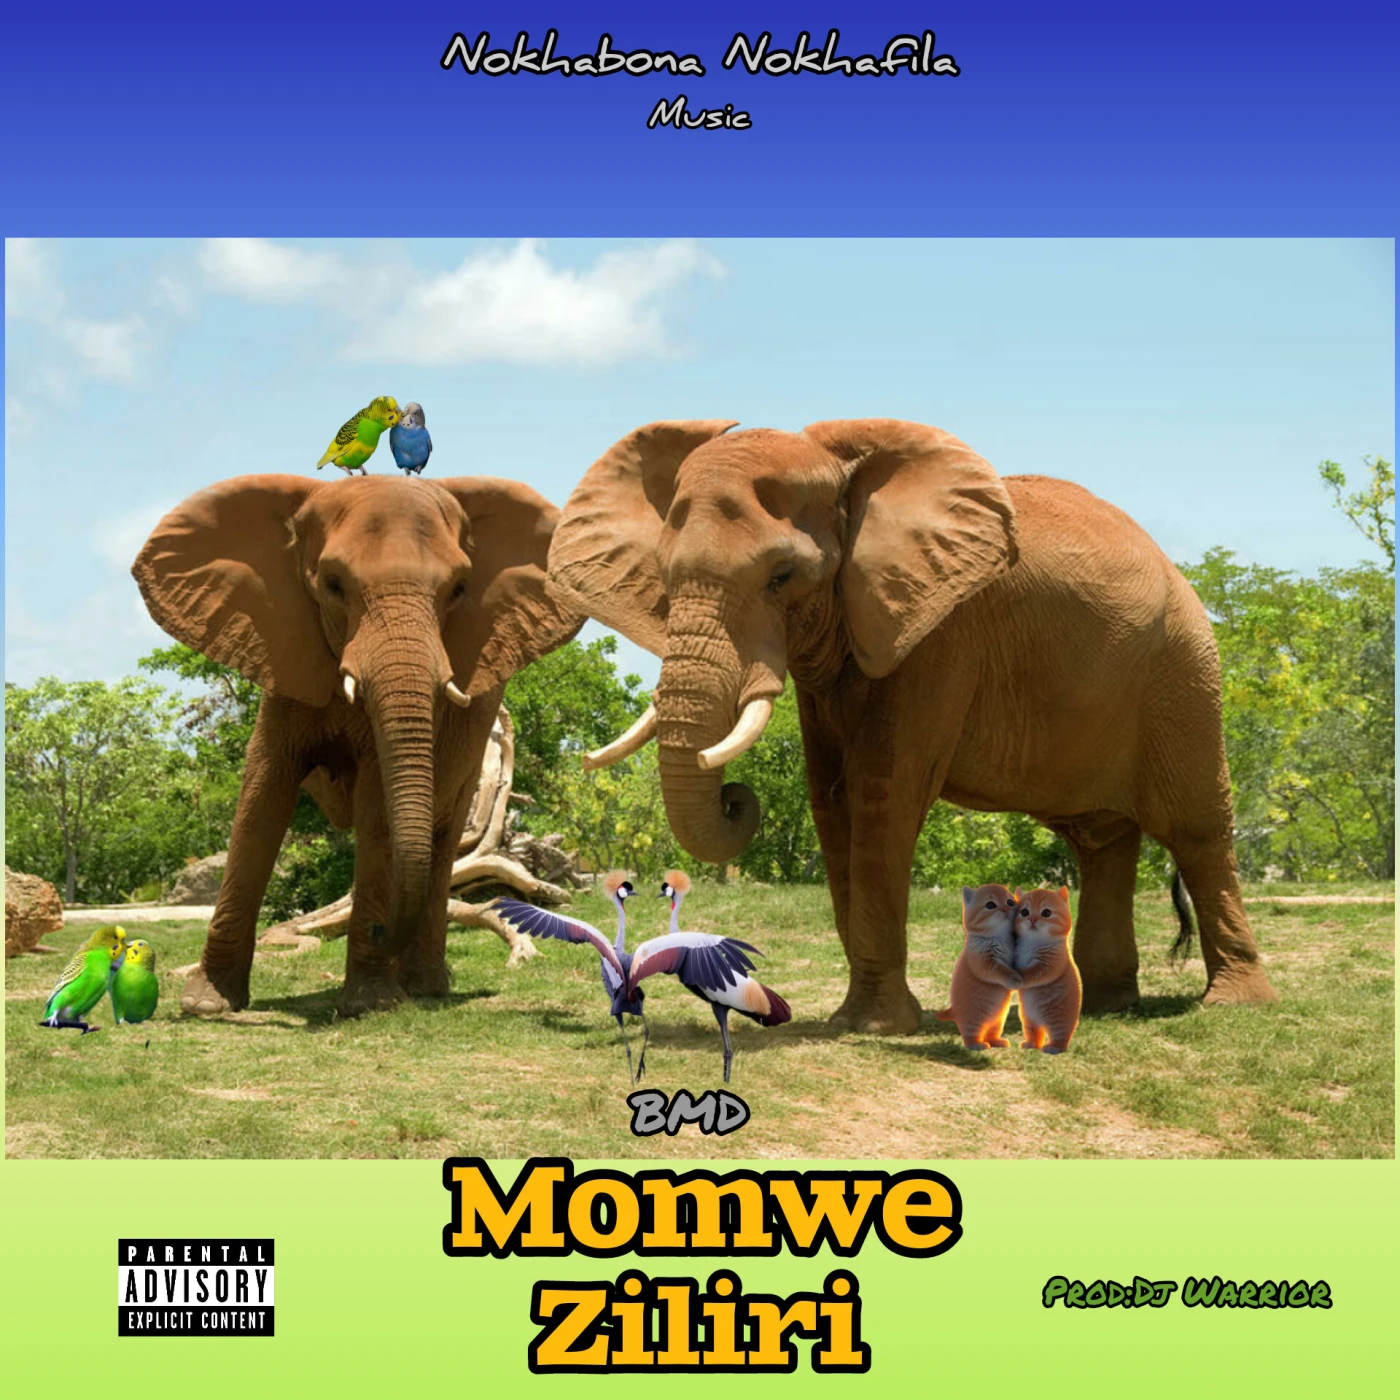 momwe-ziliri-bmd-Just Malawi Music